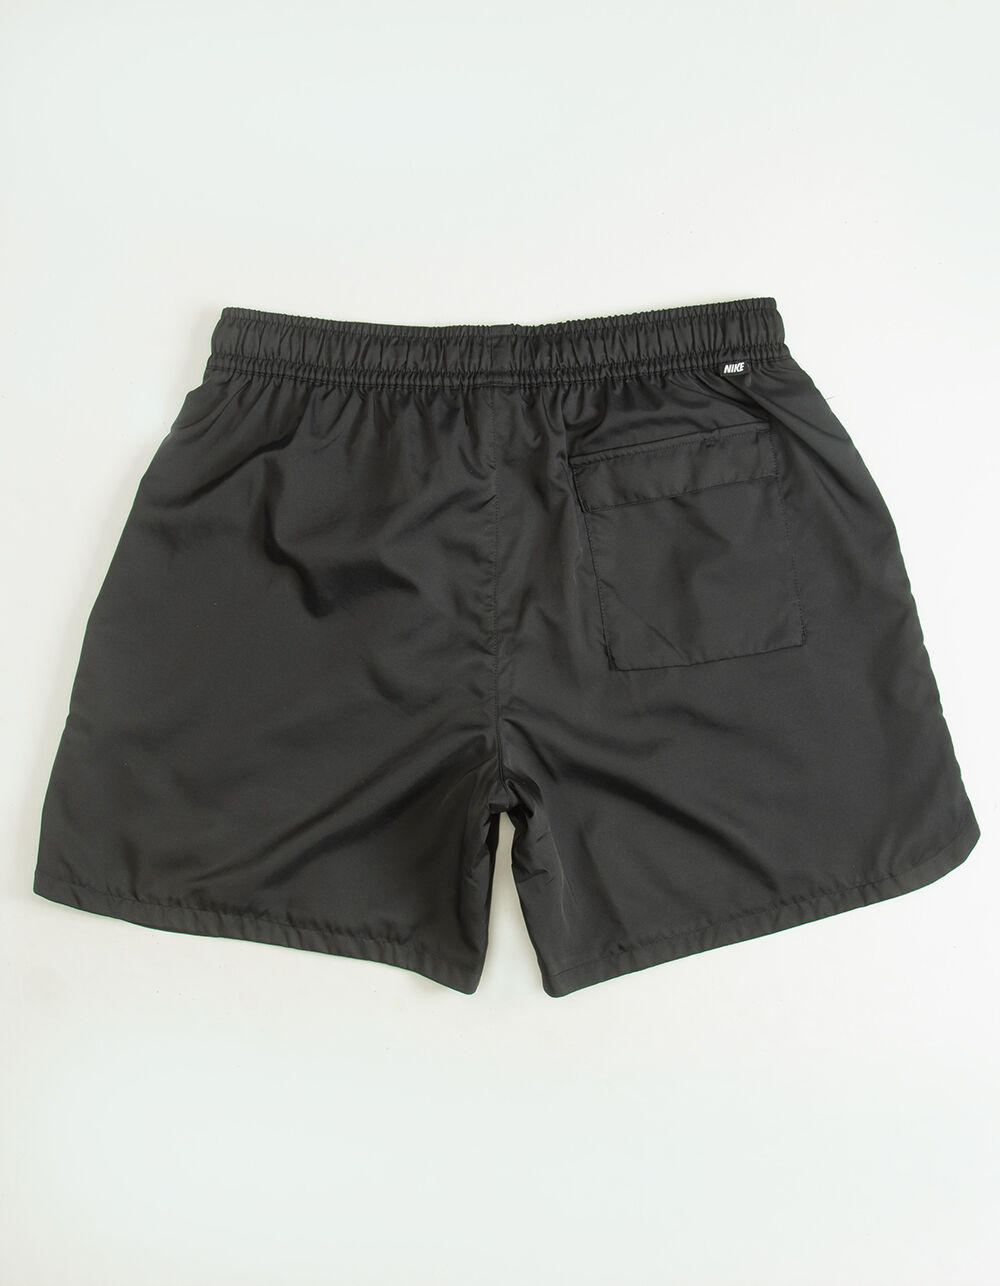 Black Shorts - Crinkle Woven Shorts - Pull-On Shorts - Lulus